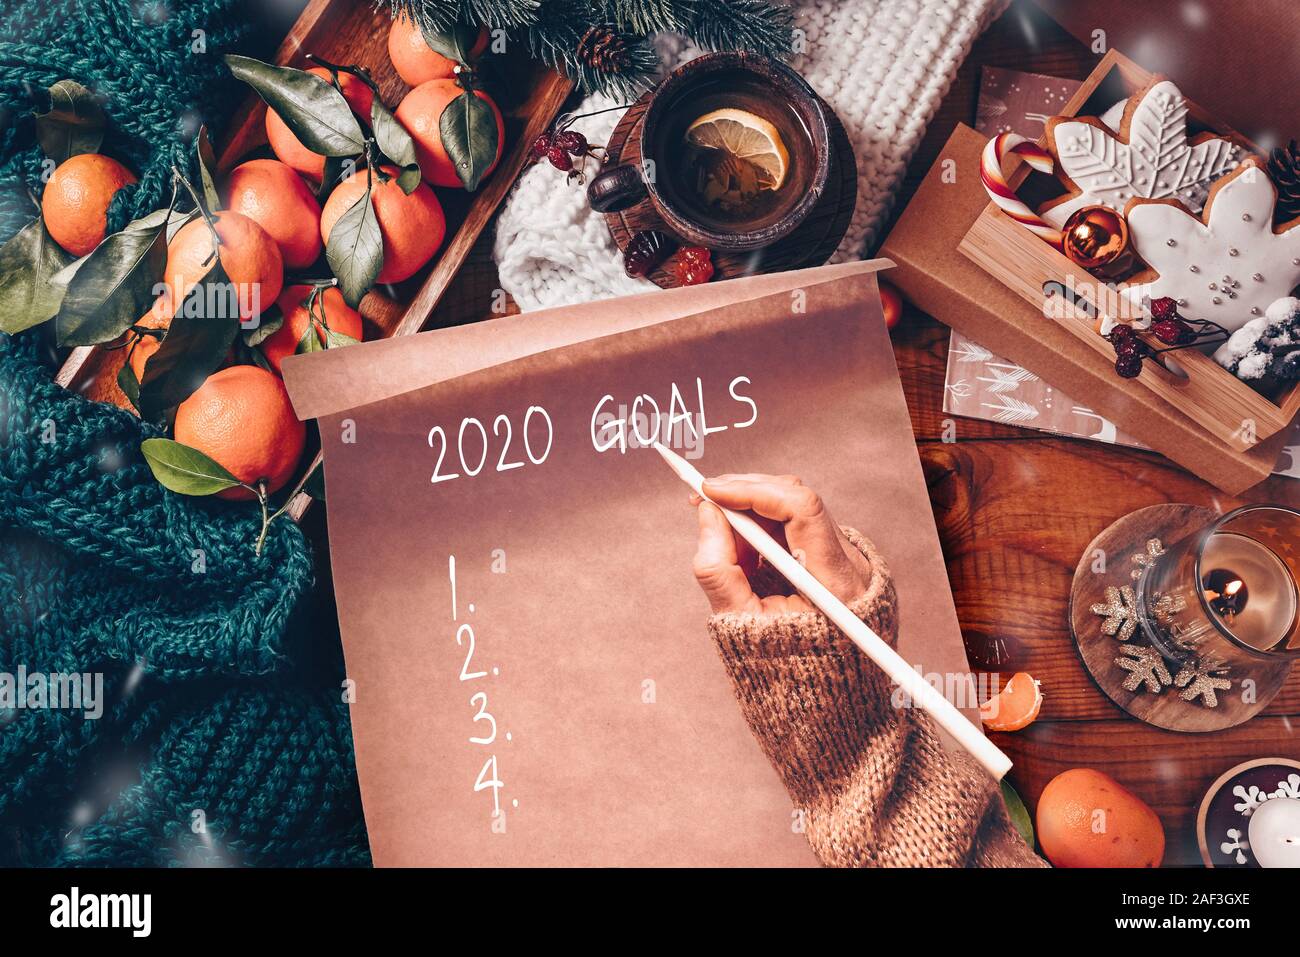 Nuovo Anno decorazioni artigianali e il foglio di carta con il 2020 obiettivi sul tavolo di legno Foto Stock